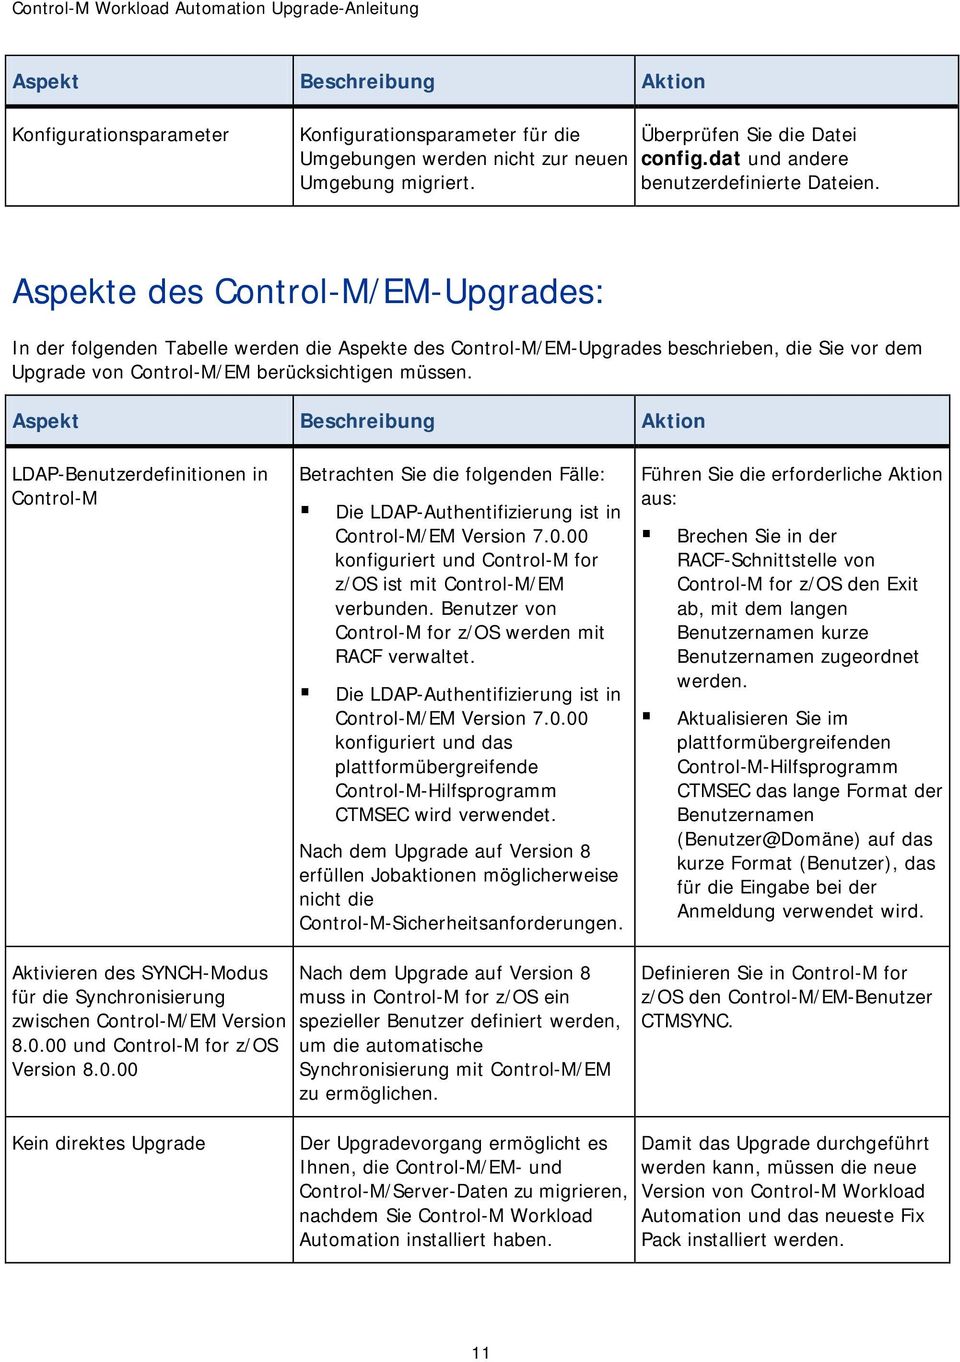 Aspekte des Control-M/EM-Upgrades: In der folgenden Tabelle werden die Aspekte des Control-M/EM-Upgrades beschrieben, die Sie vor dem Upgrade von Control-M/EM berücksichtigen müssen.